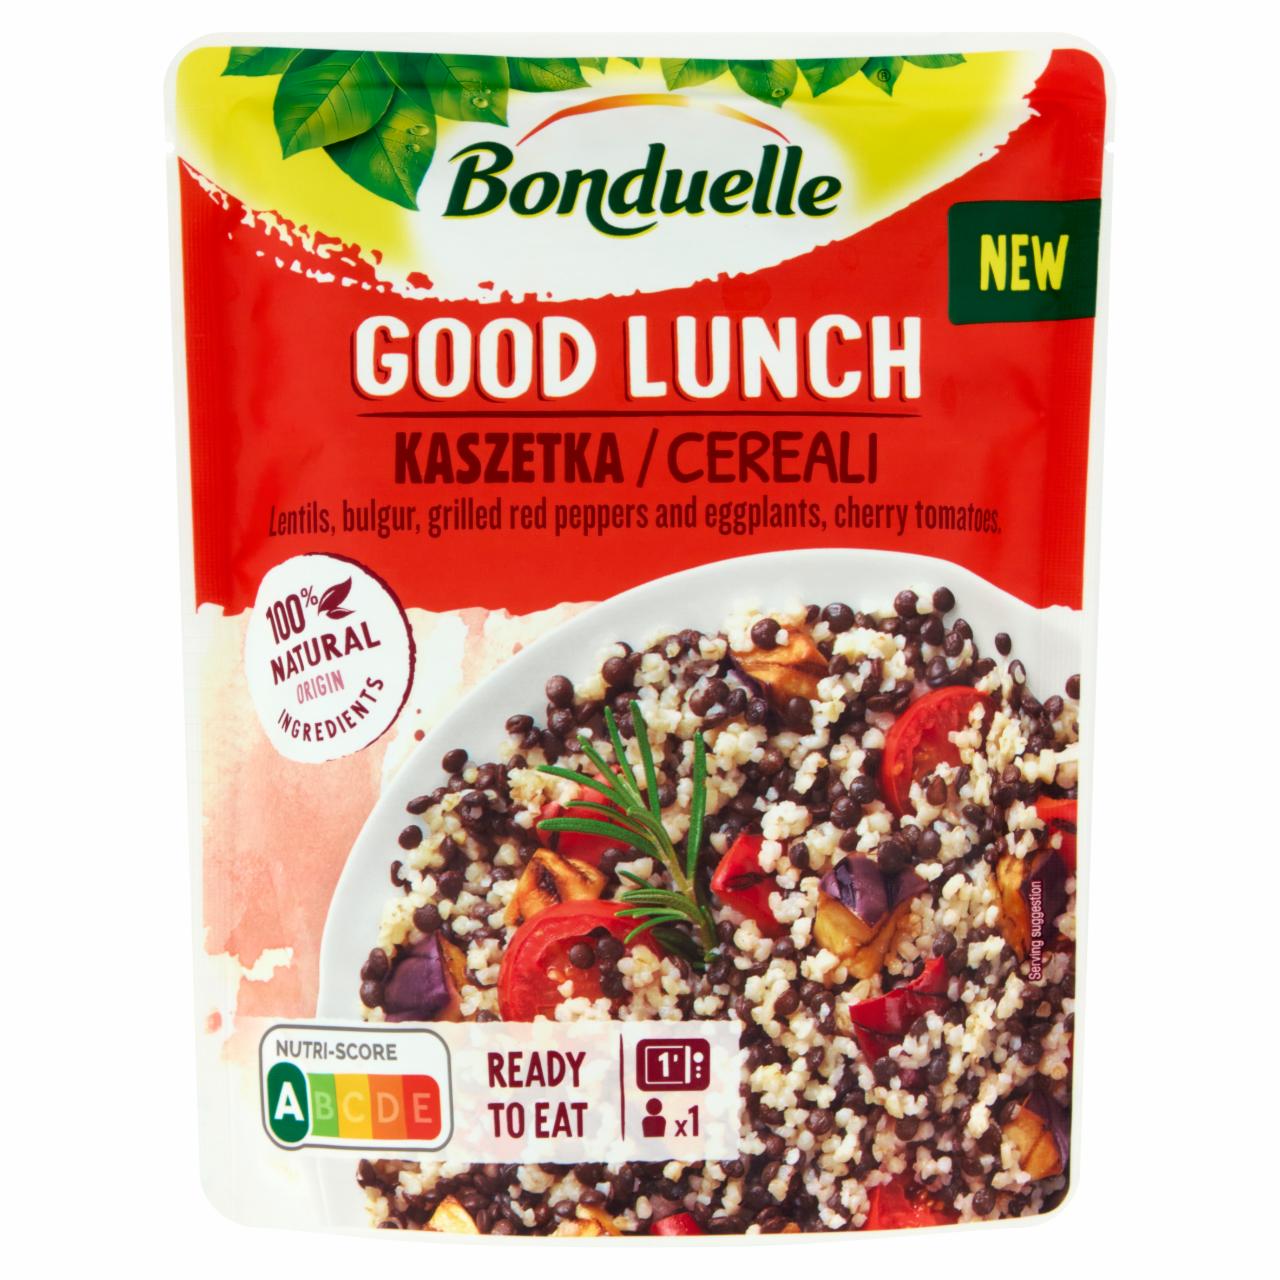 Képek - Bonduelle Good Lunch fekete beluga lencse, bulgur, zöldségek és koktélparadicsom keveréke 250 g